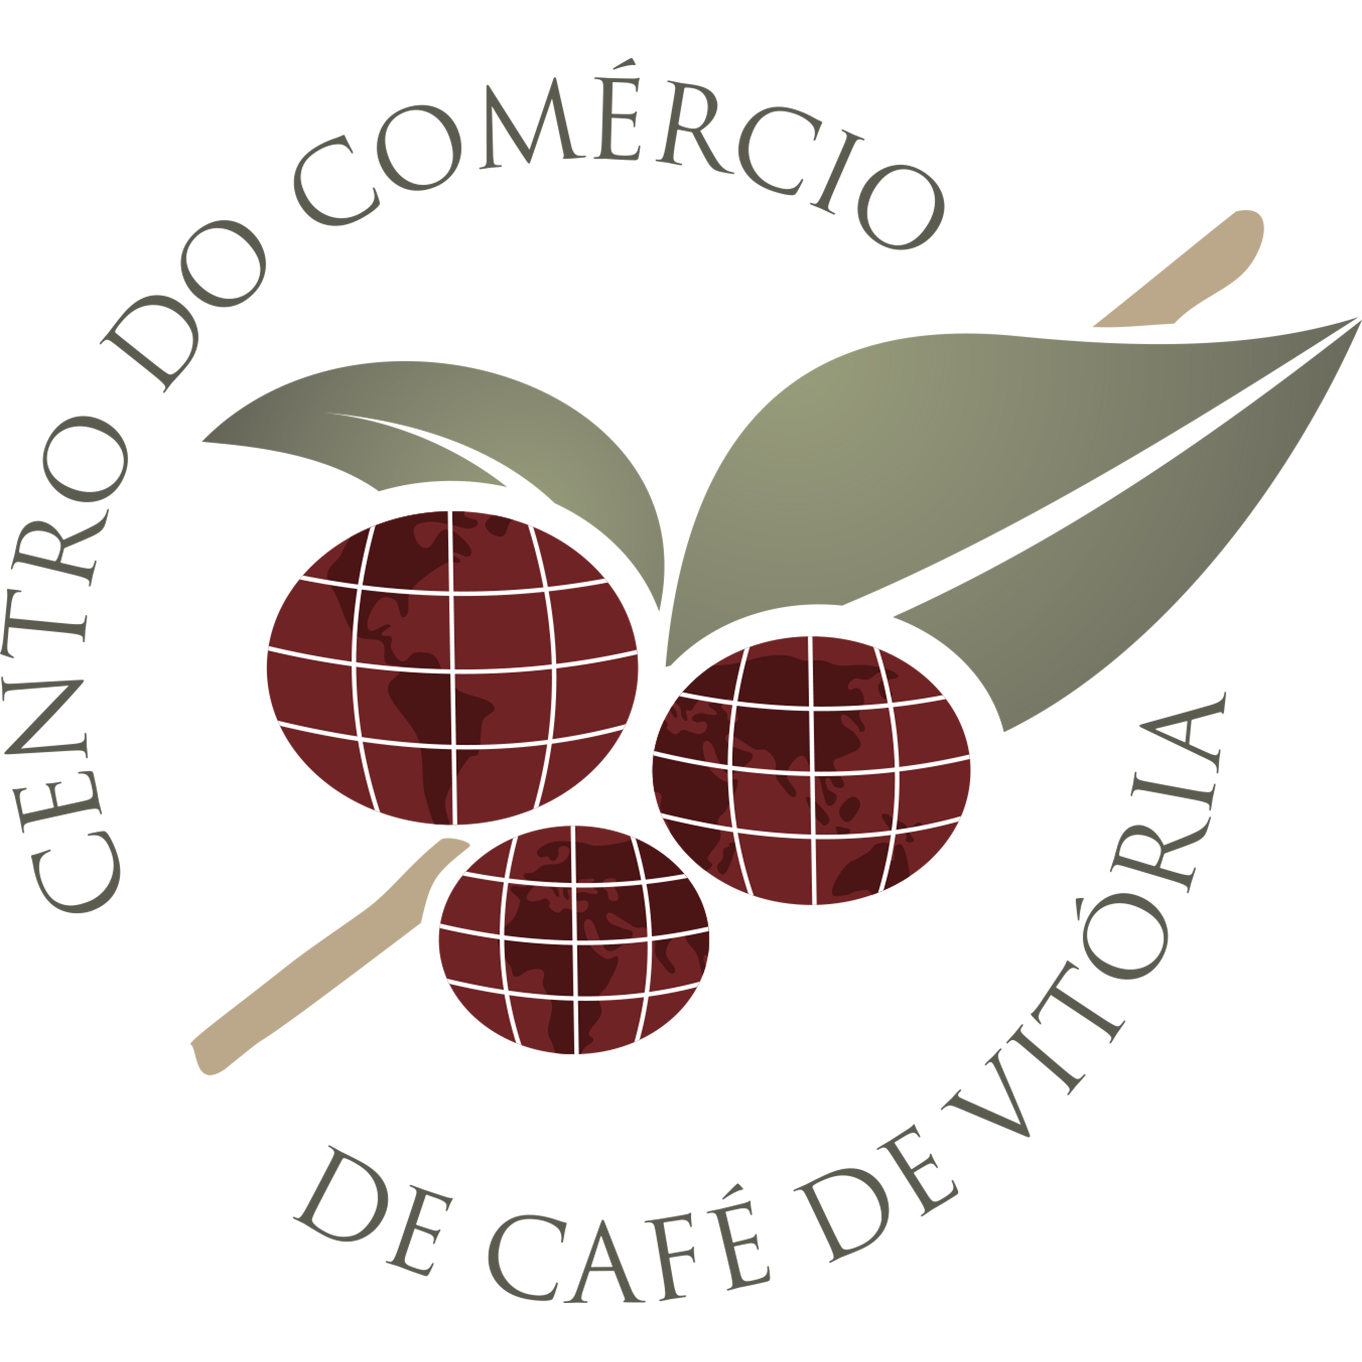 Logo CCCV